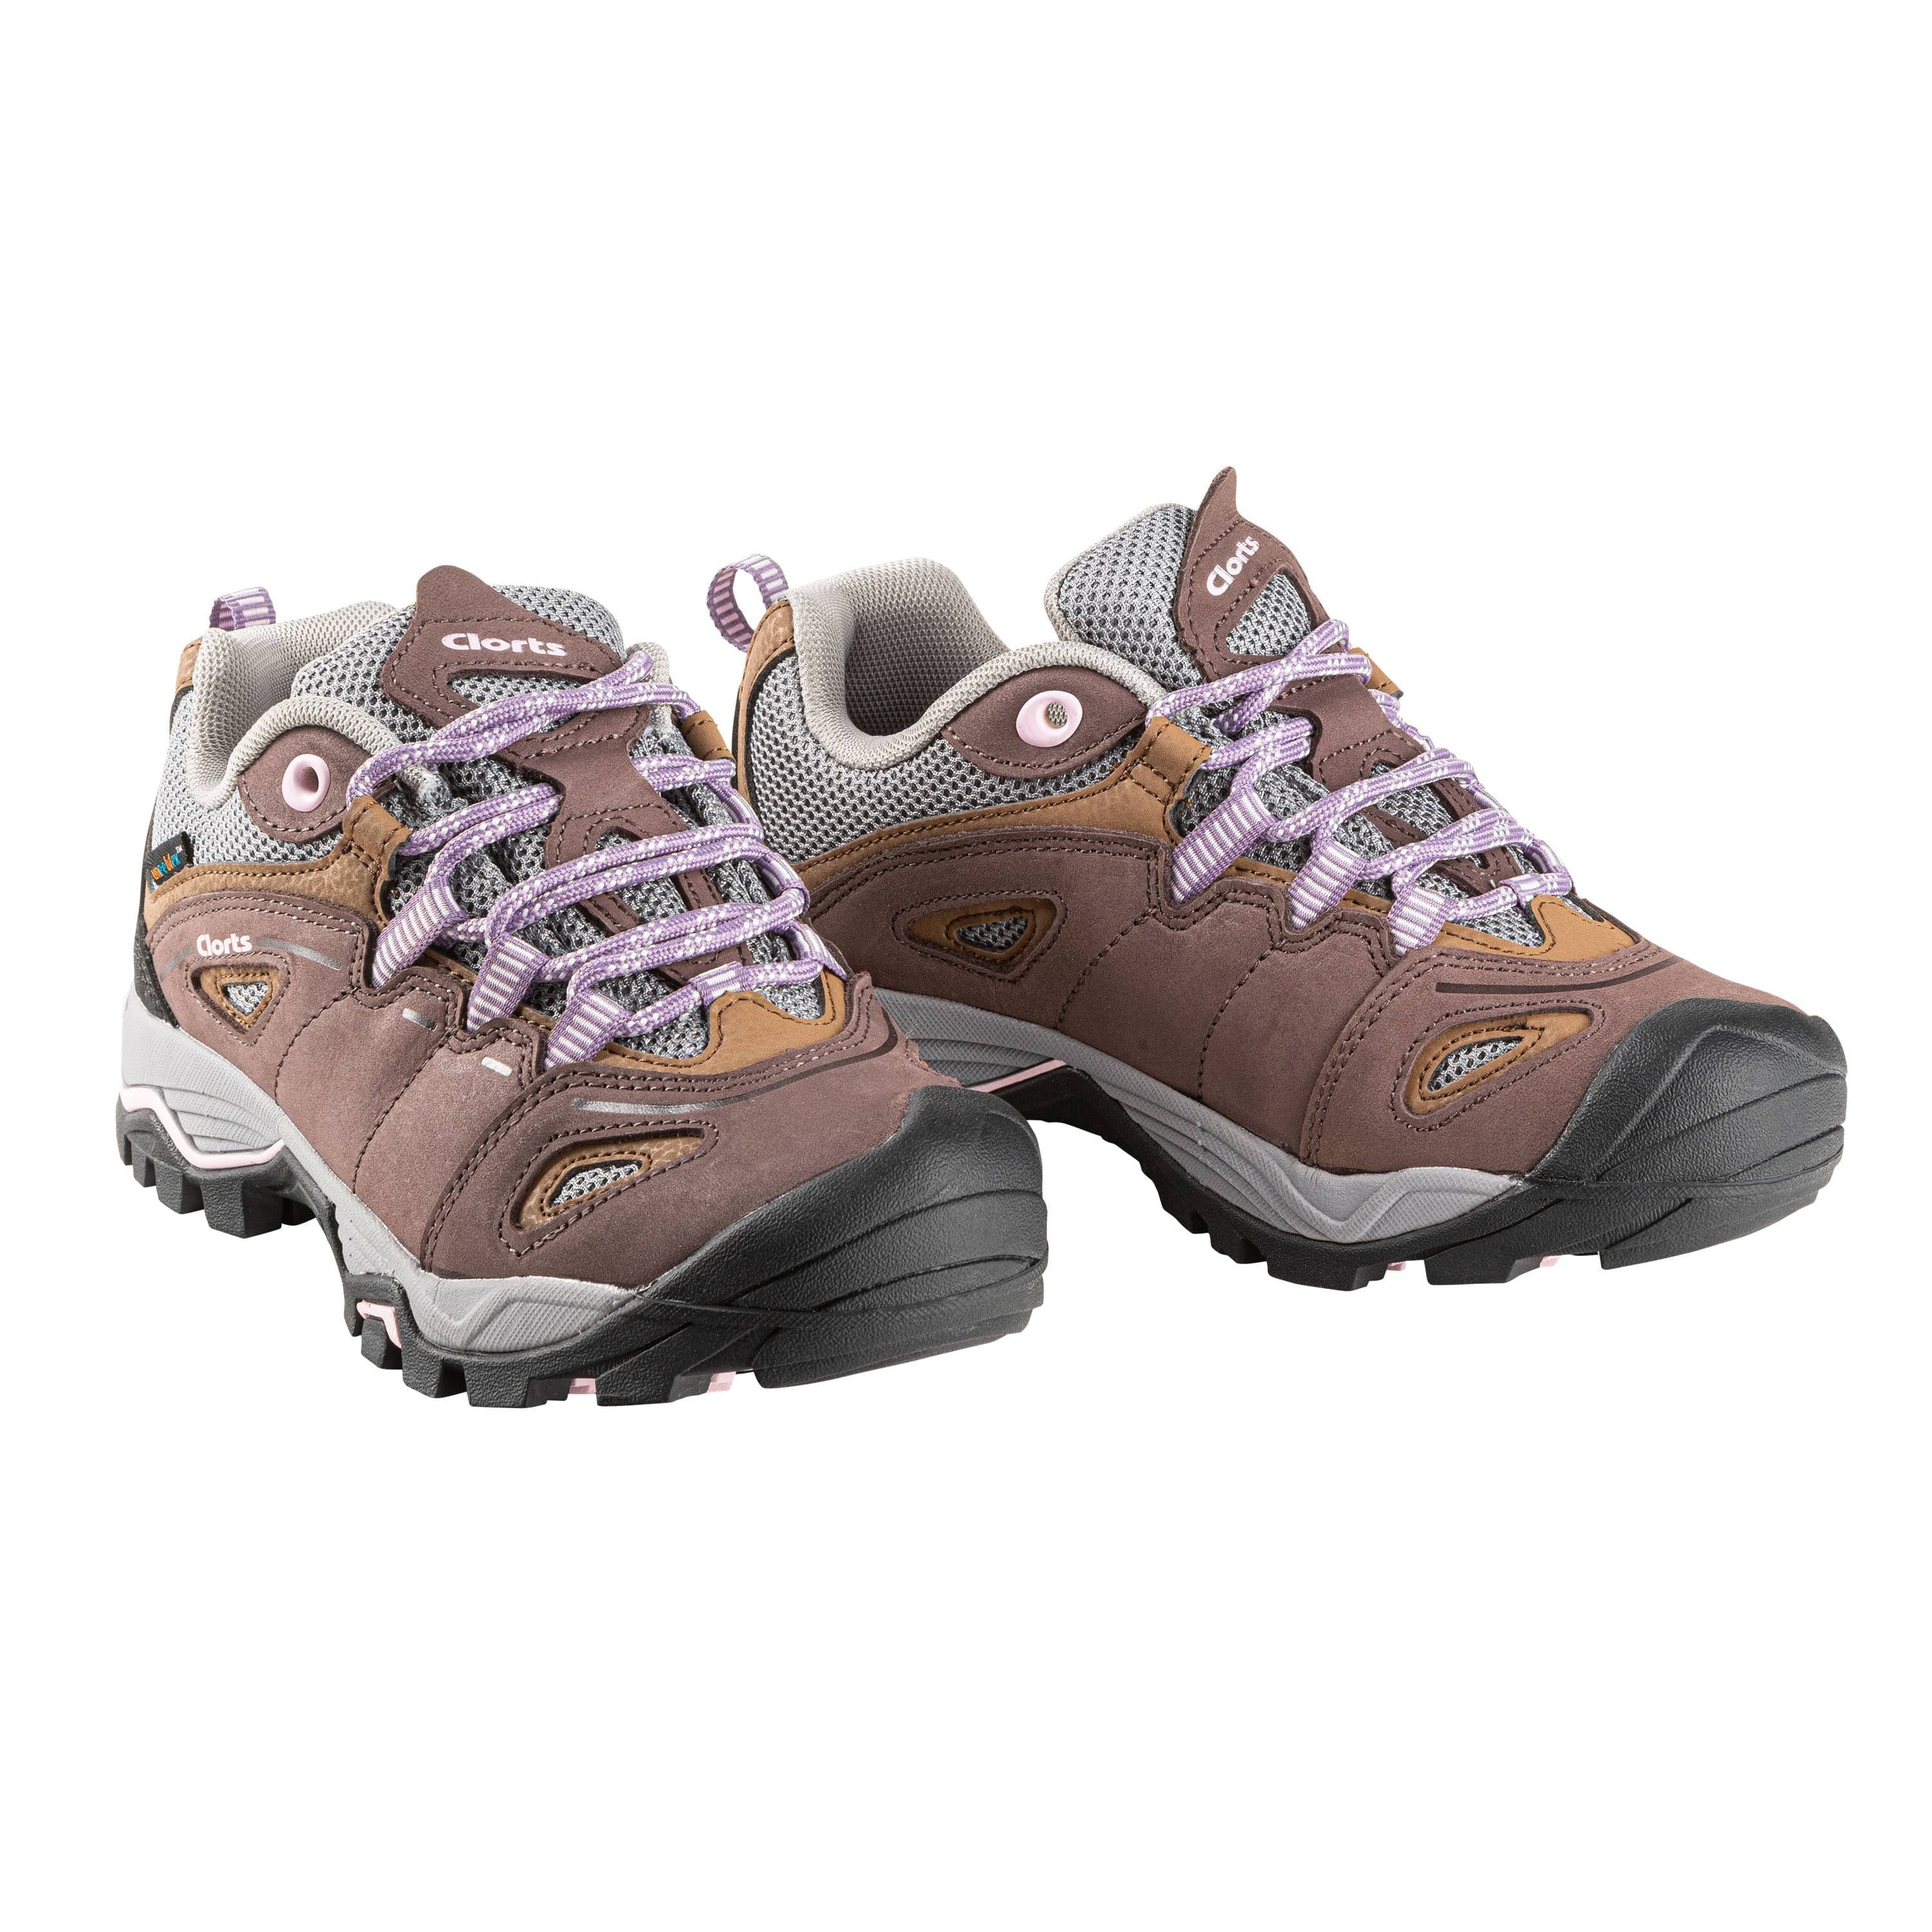 "Voda" Hiking shoes - Women's